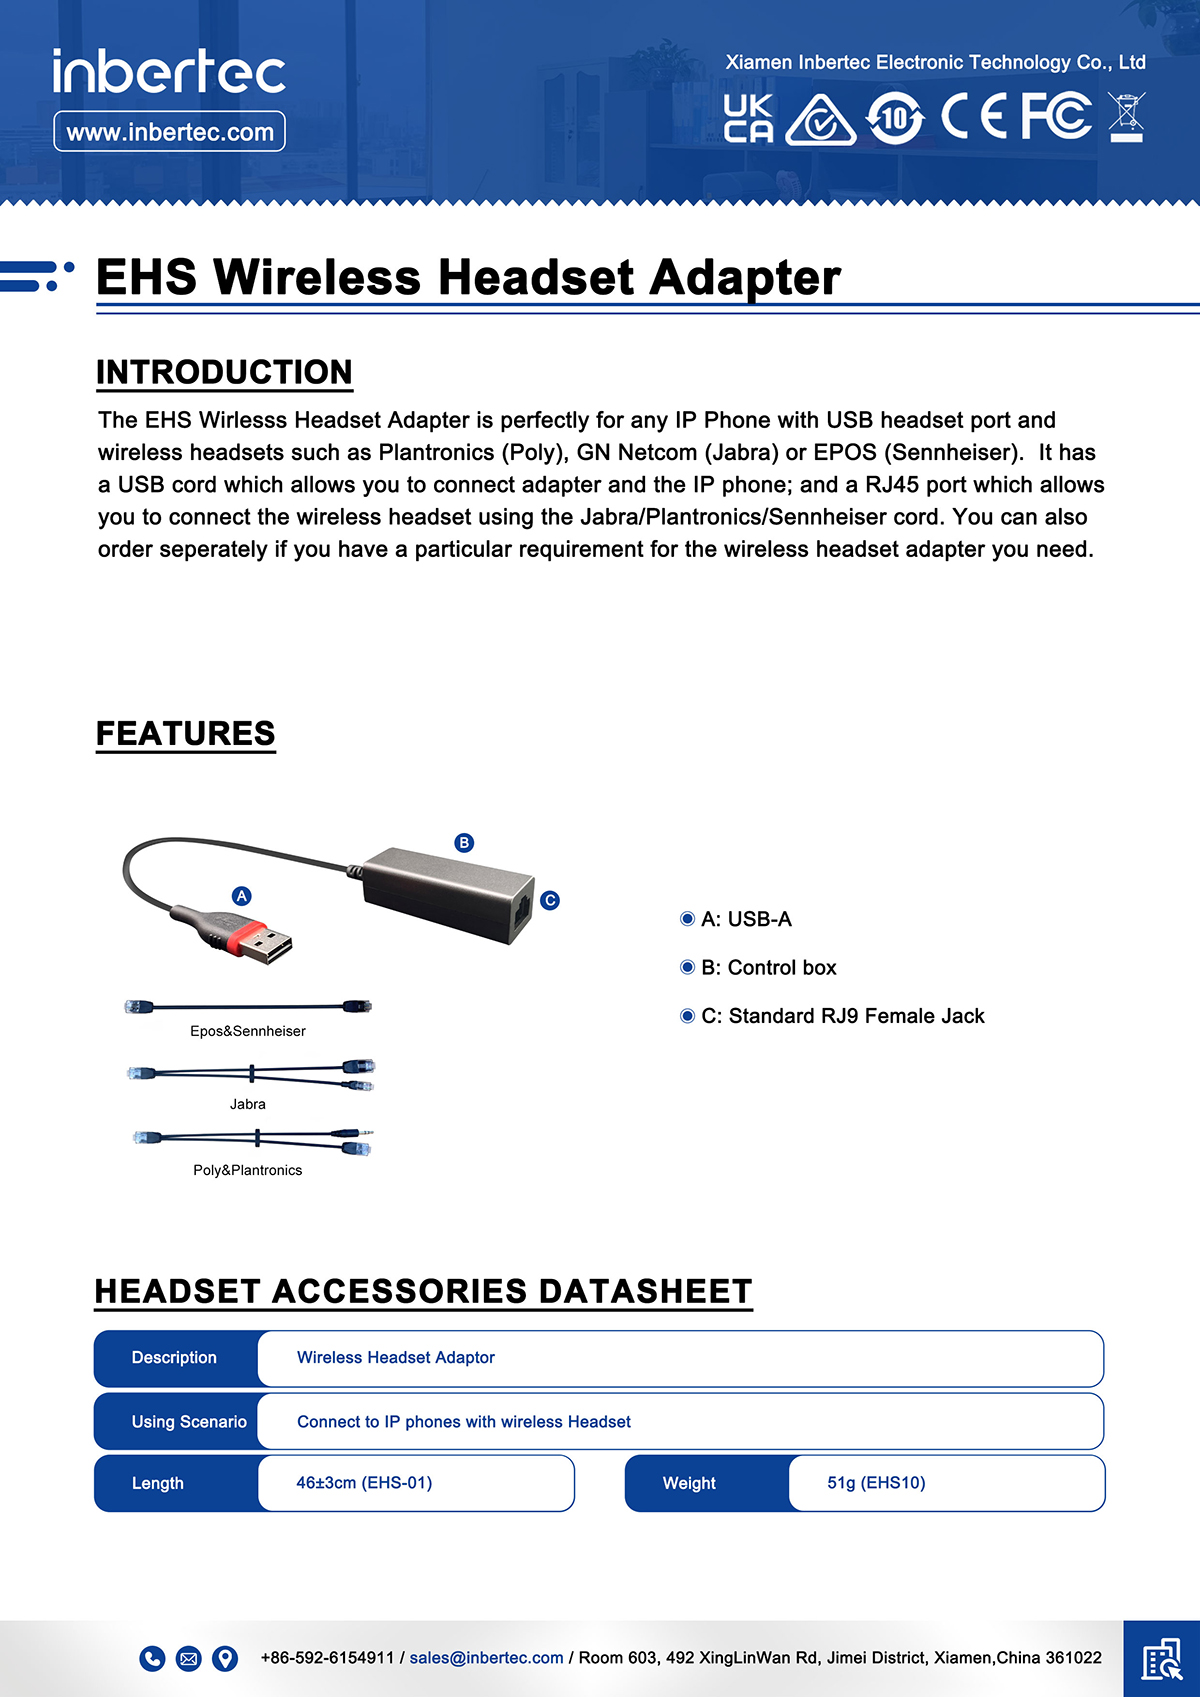 1 EHS-Wireless-Headset-Adapter